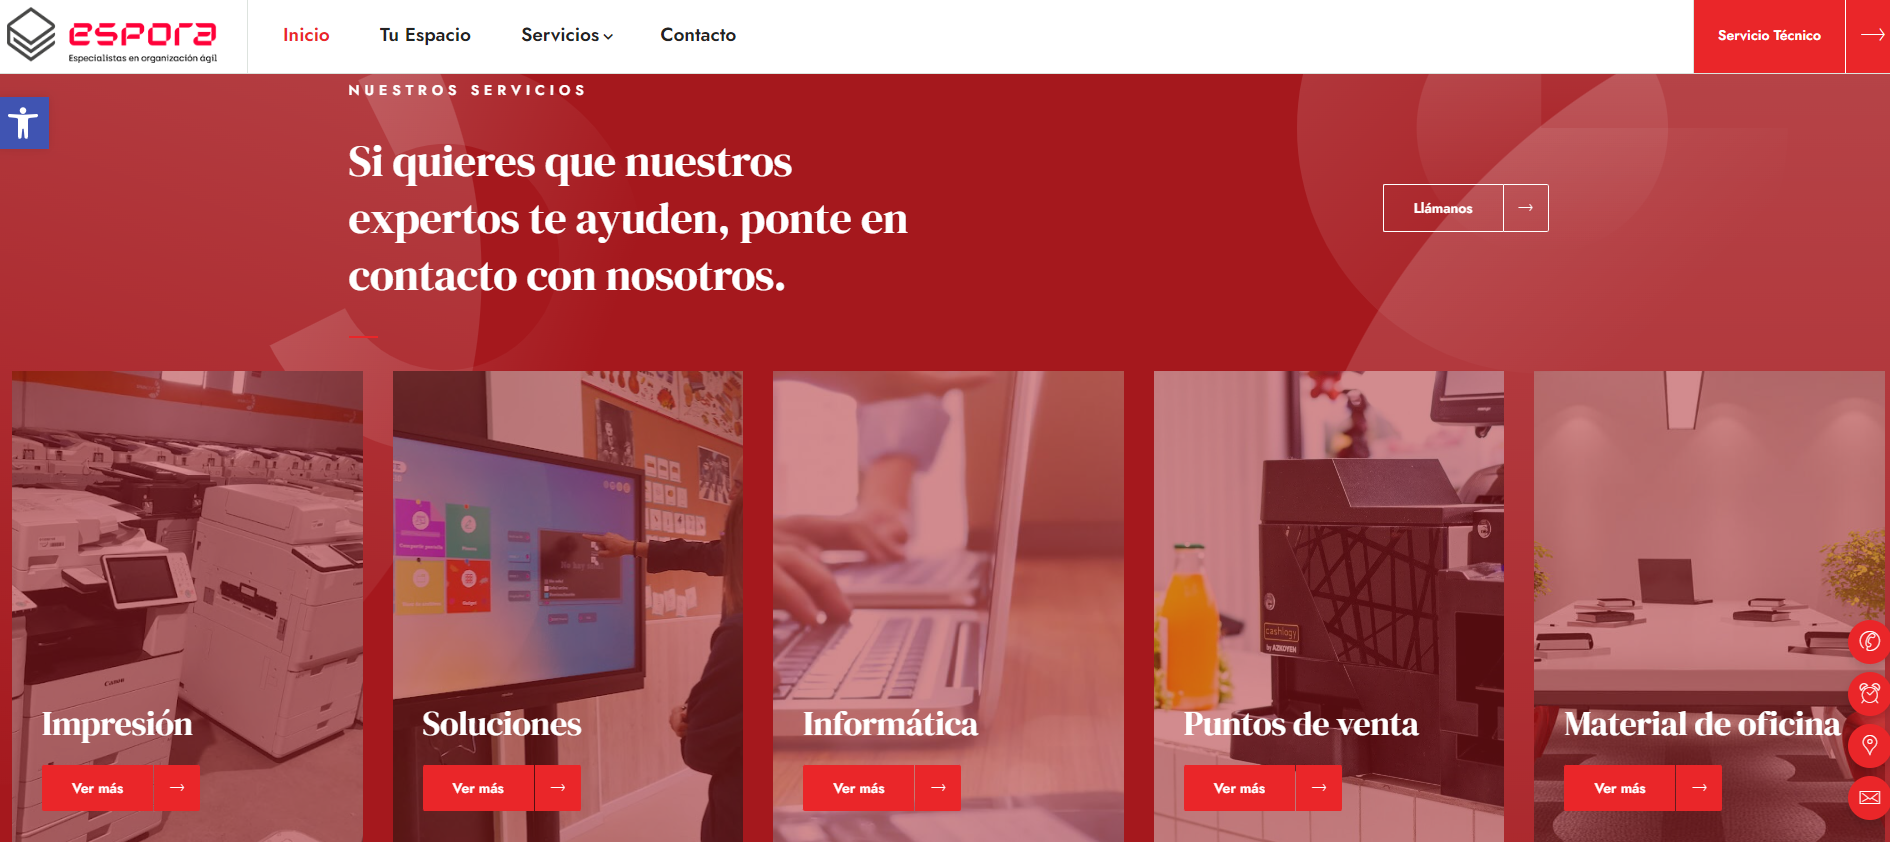 Somos Espora Ziddea | Estudio de diseño de páginas web en Ávila